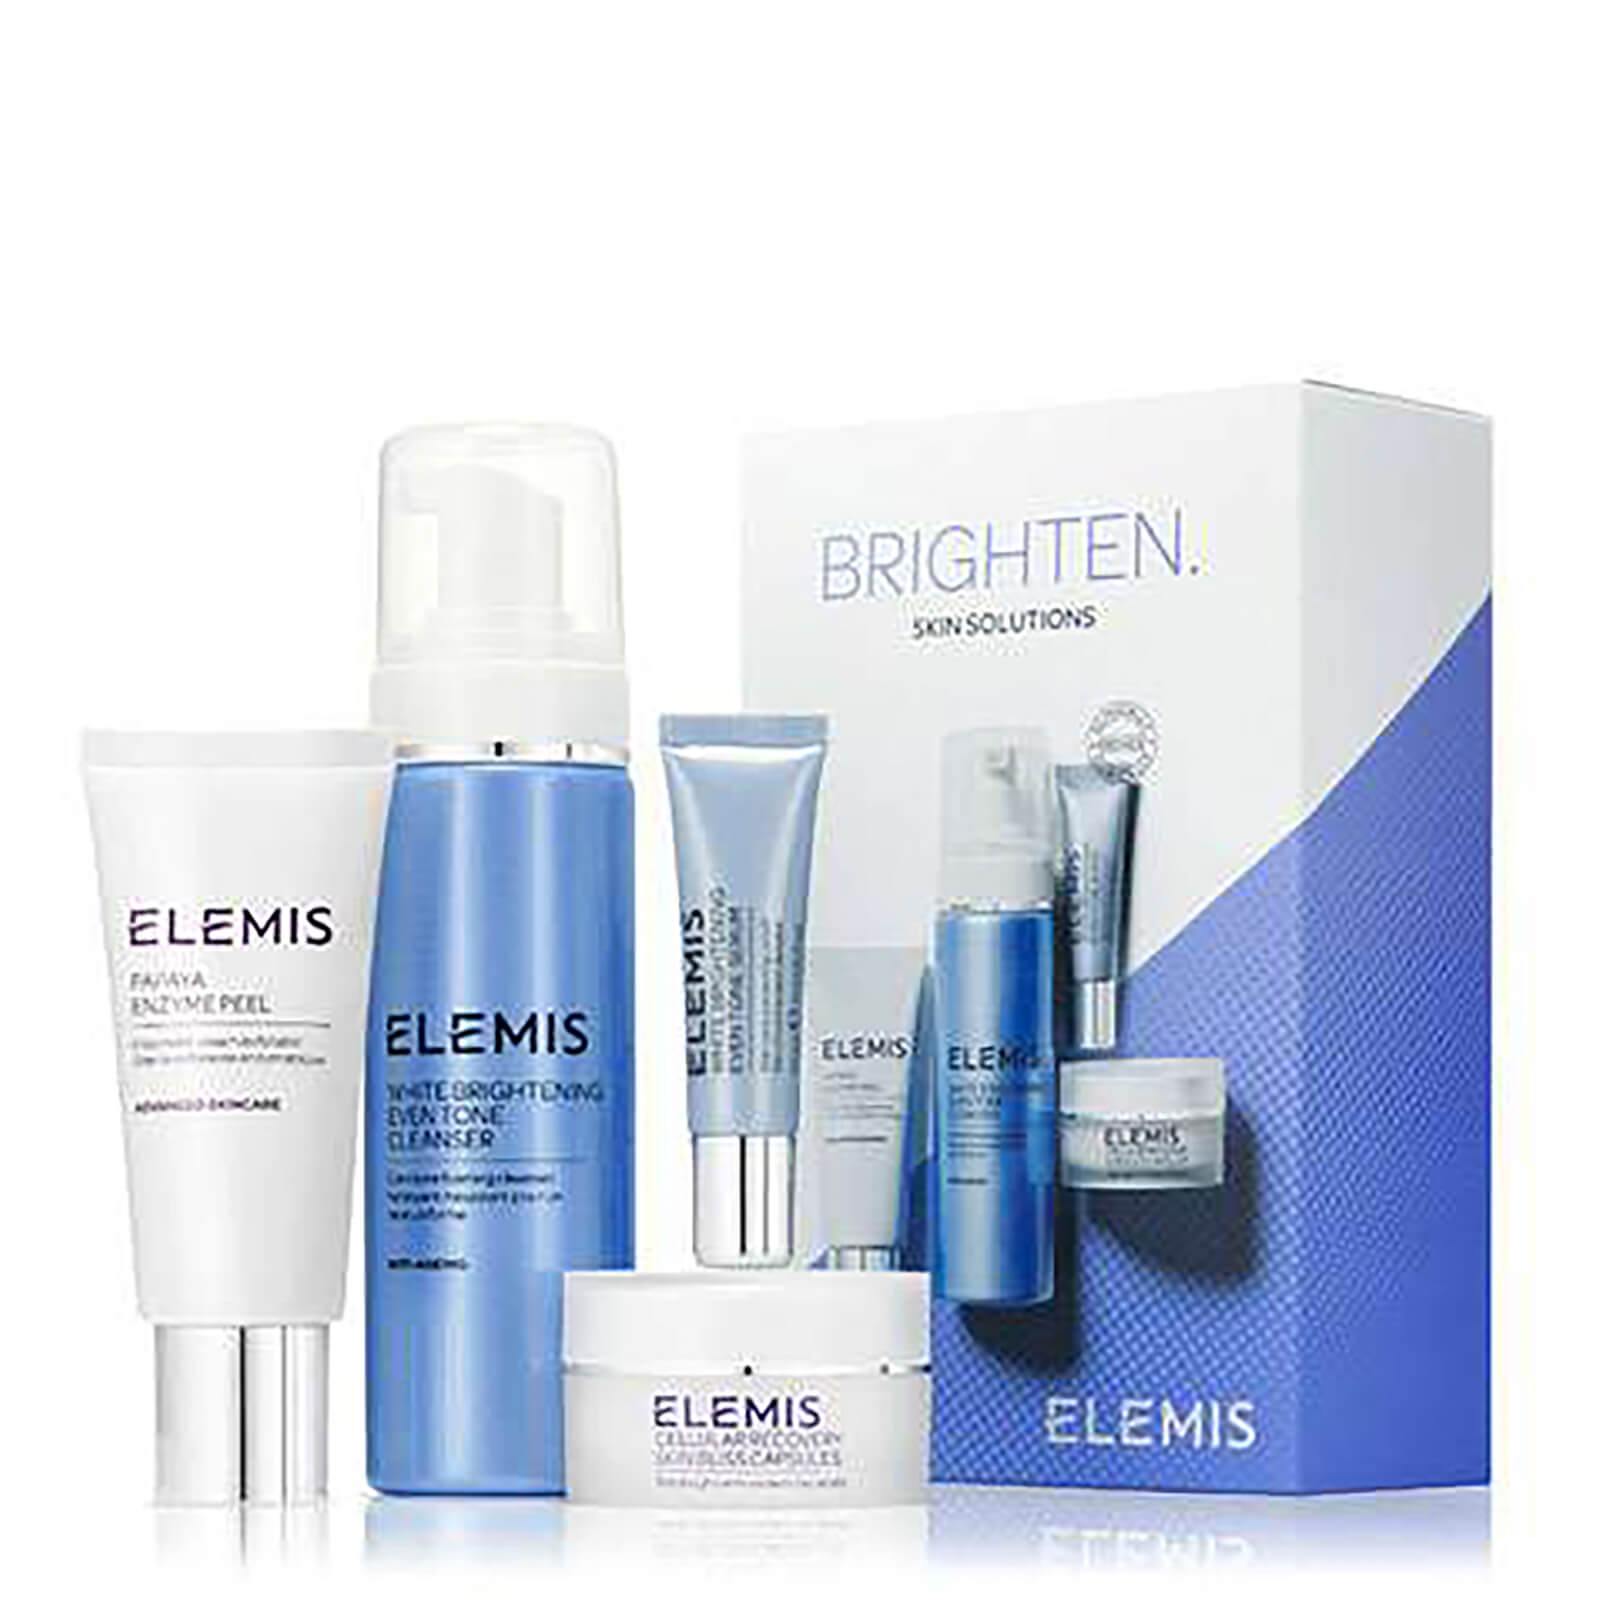 Elemis Your New Skin Solution - Brighten